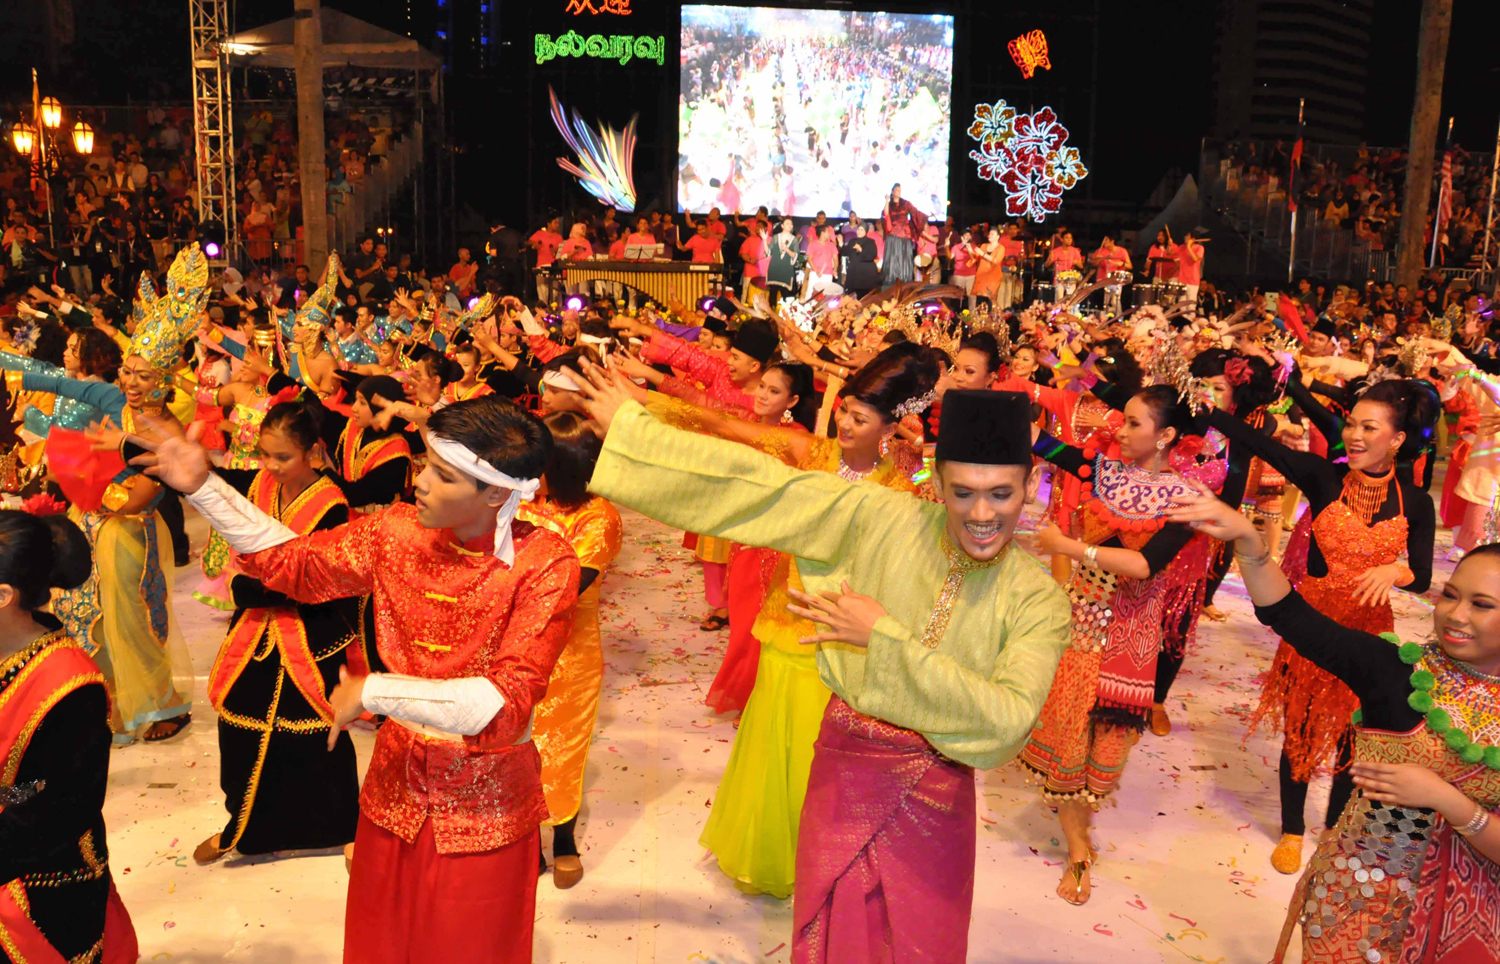 تنوع الرقصات التراثية عنصر أساسي للجذب السياحي في ماليزيا